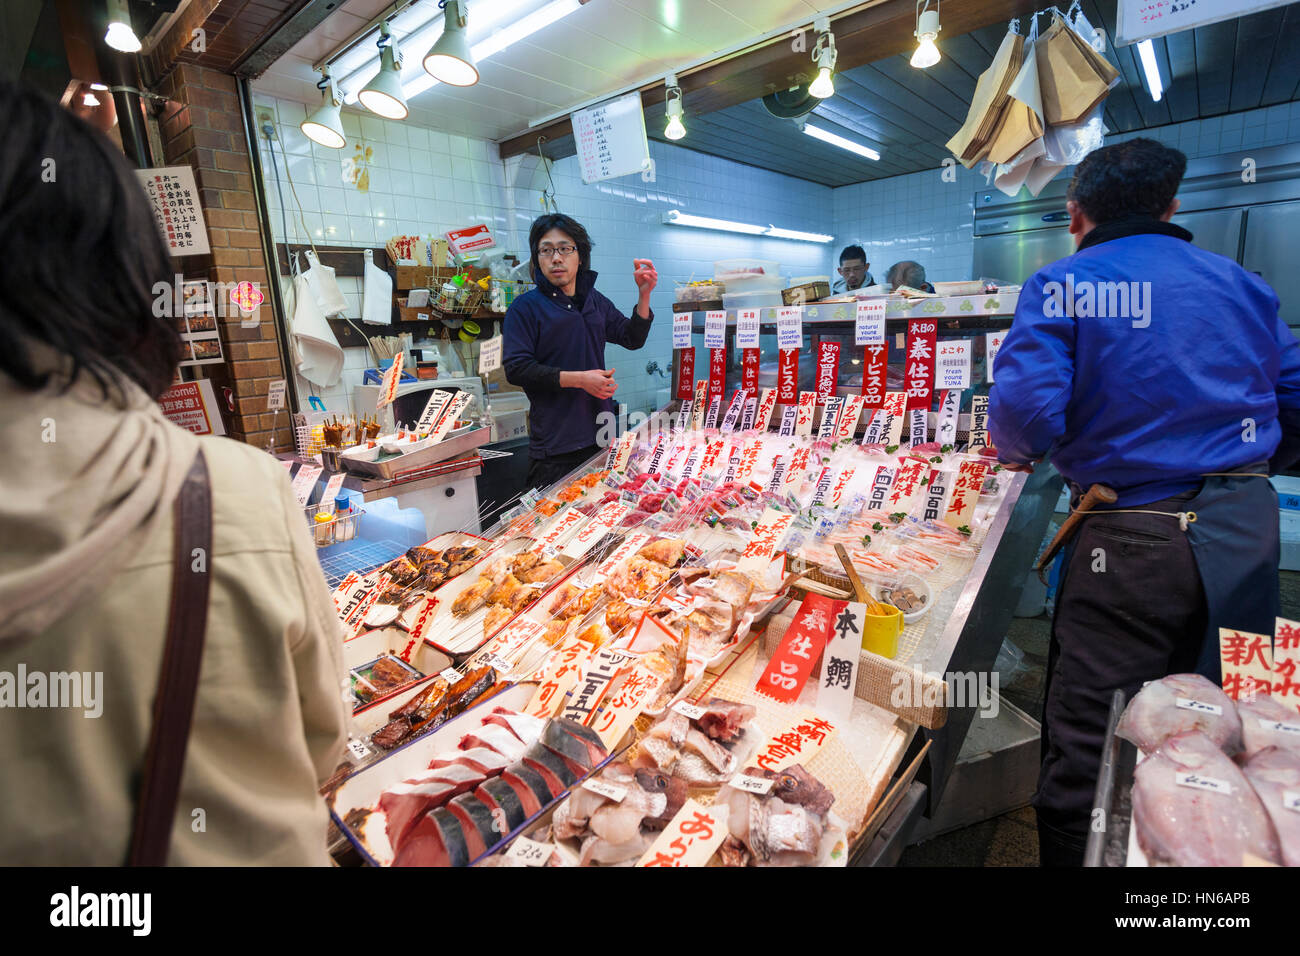 KYOTO, Japón - 23 de marzo: el personal y los clientes en un puesto de venta de pescado en el mercado de alimentos Nishiki en el centro de Kyoto el 23 de marzo de 2012. Foto de stock